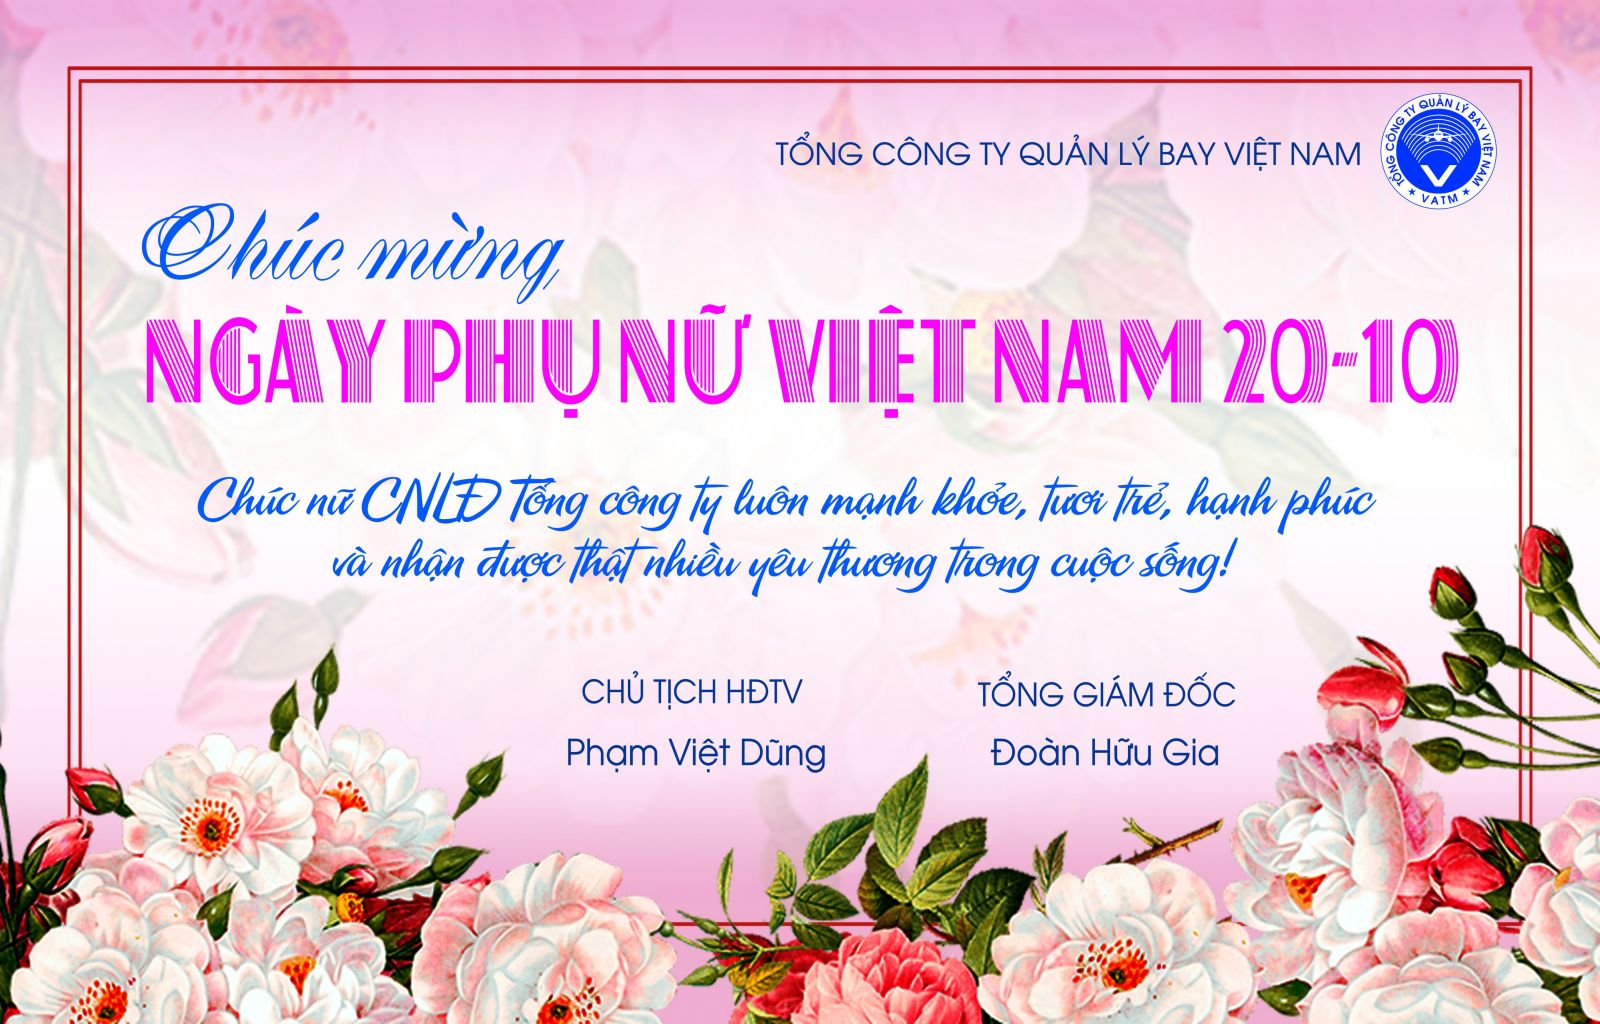 Chúc mừng ngày Phụ nữ Việt Nam 20-10: Cùng chúc mừng ngày Phụ nữ Việt Nam 20-10, ngày để tôn vinh và trân trọng những người phụ nữ trong cuộc sống của chúng ta. Chúc cho những người phụ nữ luôn xinh đẹp, sức khỏe, niềm vui và hạnh phúc trong cuộc sống. Tổ chức một buổi tiệc nhỏ, tặng món quà thật ý nghĩa để gửi đến lời chúc tốt đẹp tới những người phụ nữ thân yêu của mình, hãy để mỗi người phụ nữ cảm thấy được quan tâm và trân trọng.